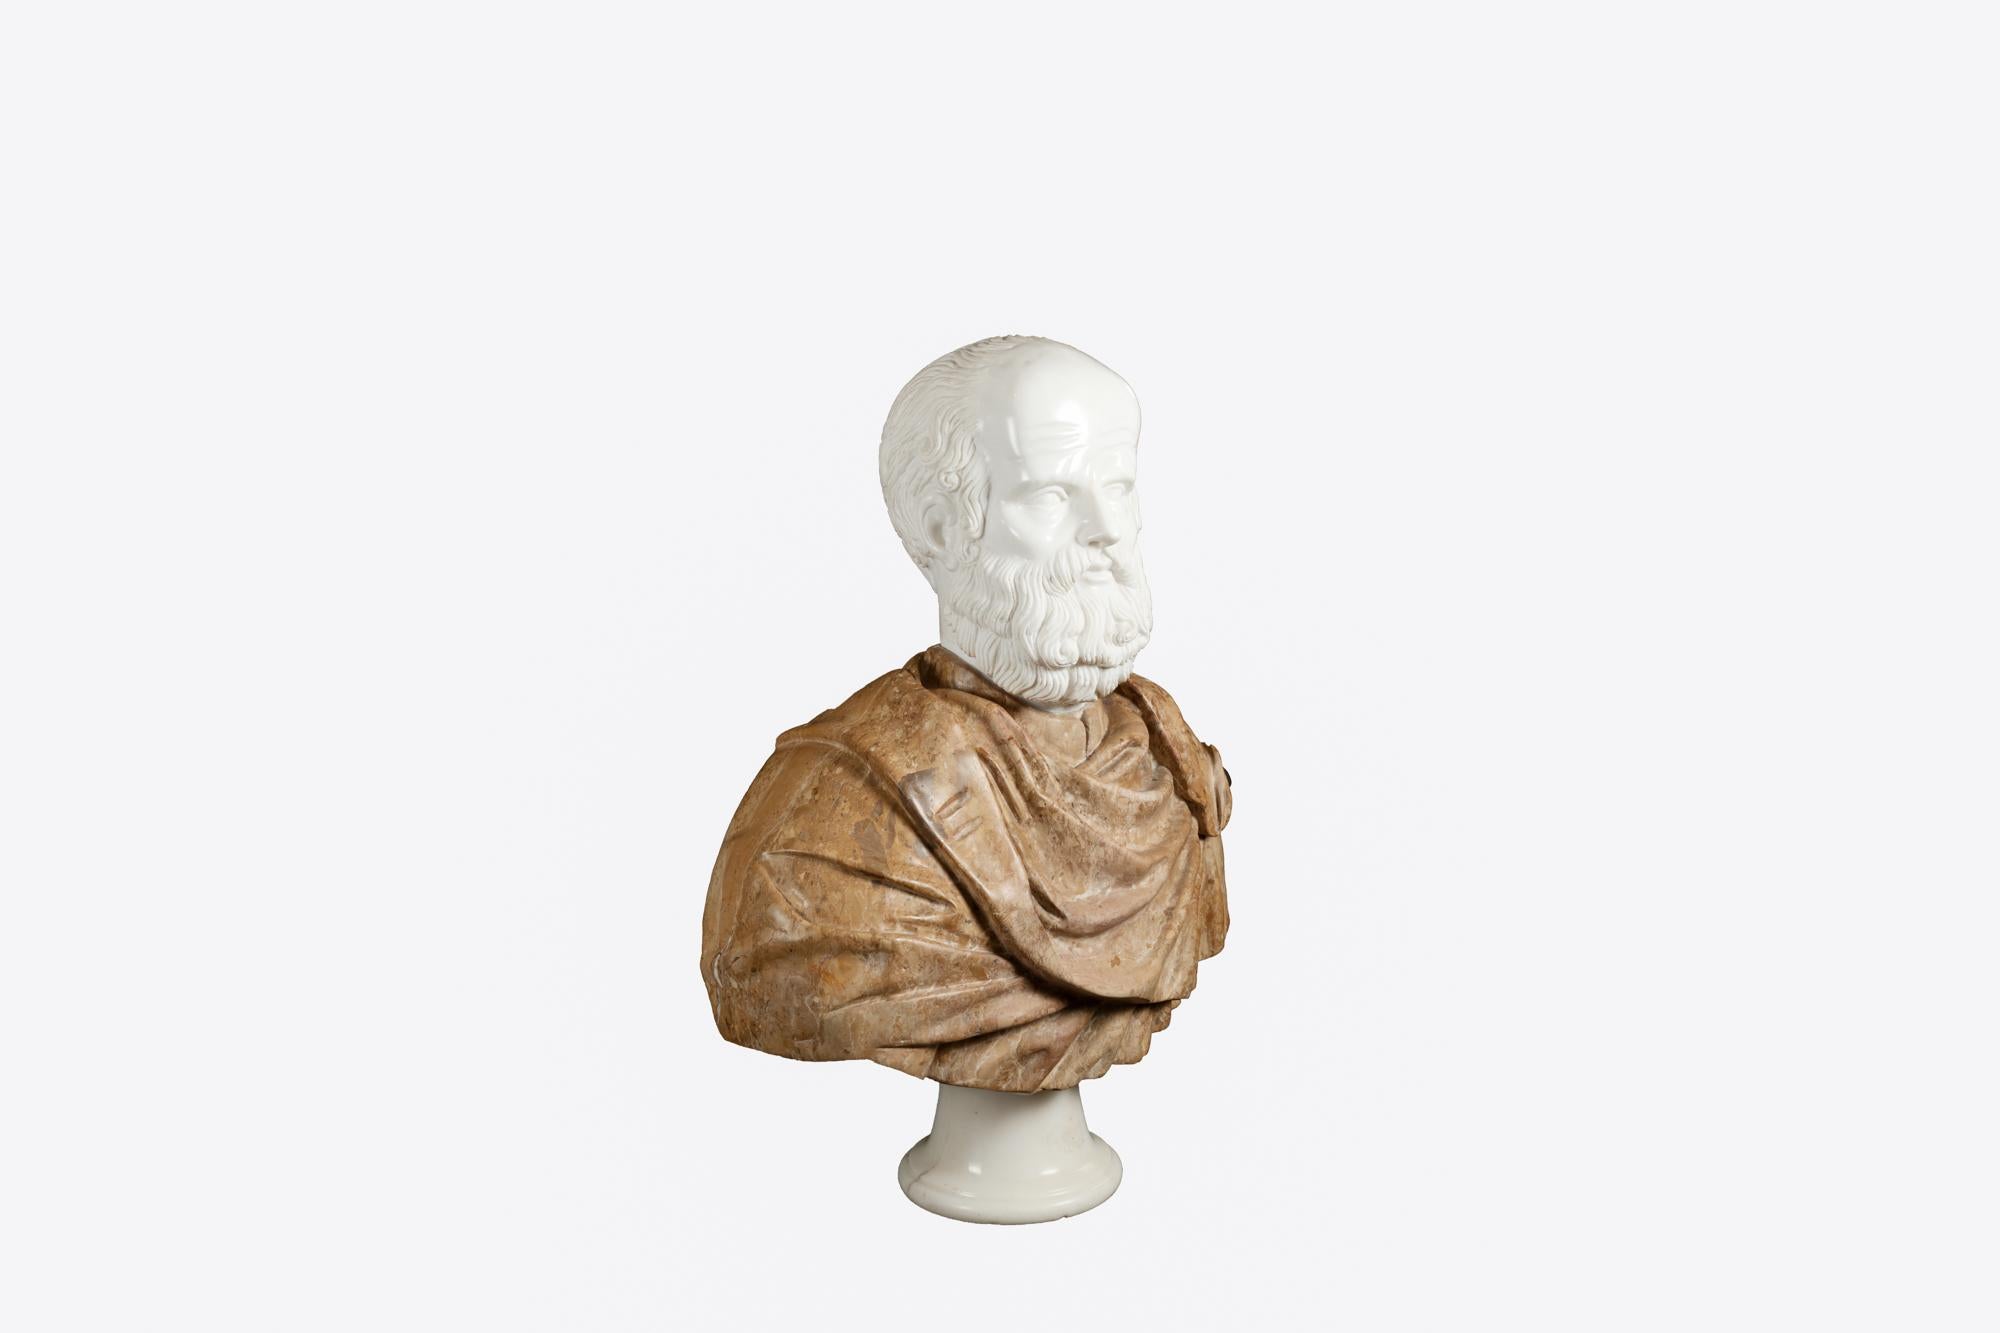 Buste en marbre italien du XIXe siècle représentant le philosophe grec classique Socrate. Sa robe drapée est sculptée à la main dans du Scagliola rouge et son visage est modelé dans du marbre de Carrare blanc contrastant. La pièce repose sur un